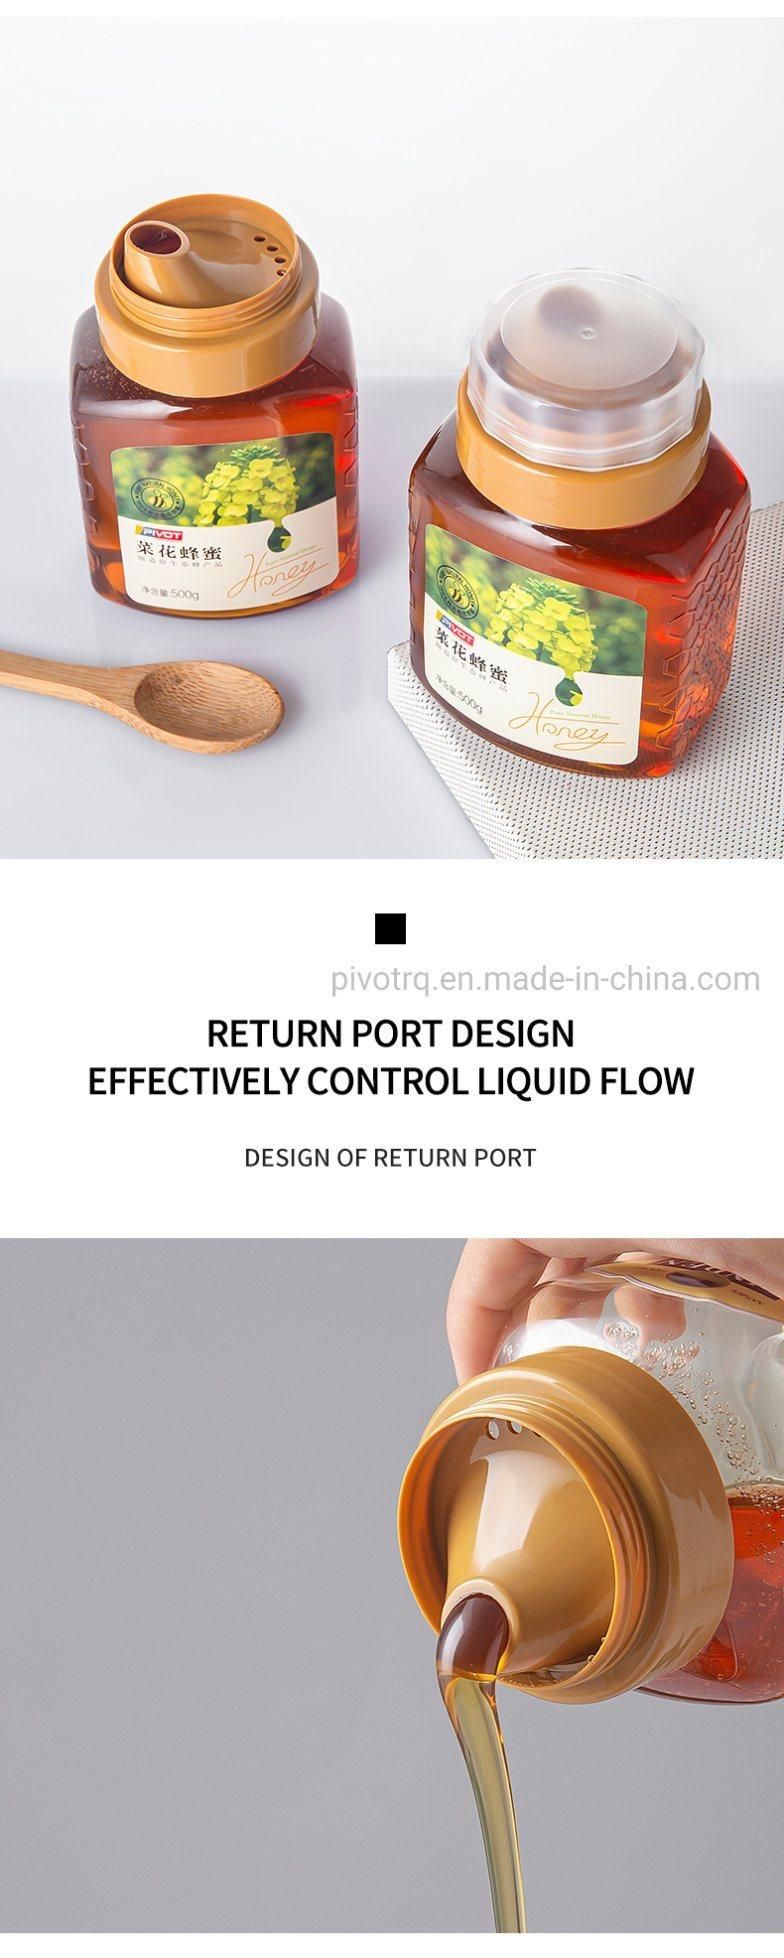 500g Pet Food Grade Plastic Honey Bottle with Reflux Inlet Design Cap